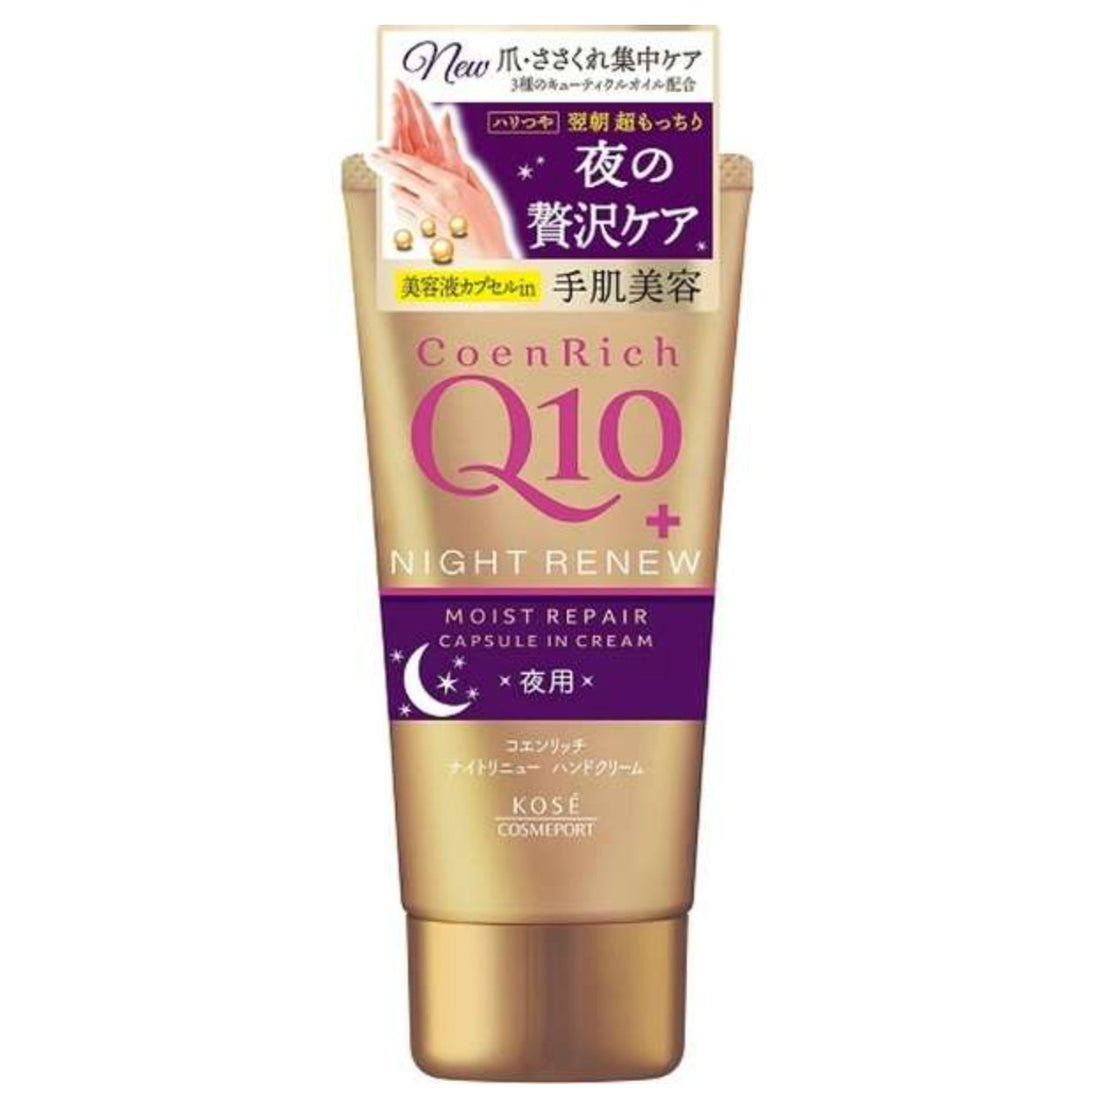 Kose Cosmeport Coen Rich Q10 Night Renew Hand Cream - 80g - NihonMura